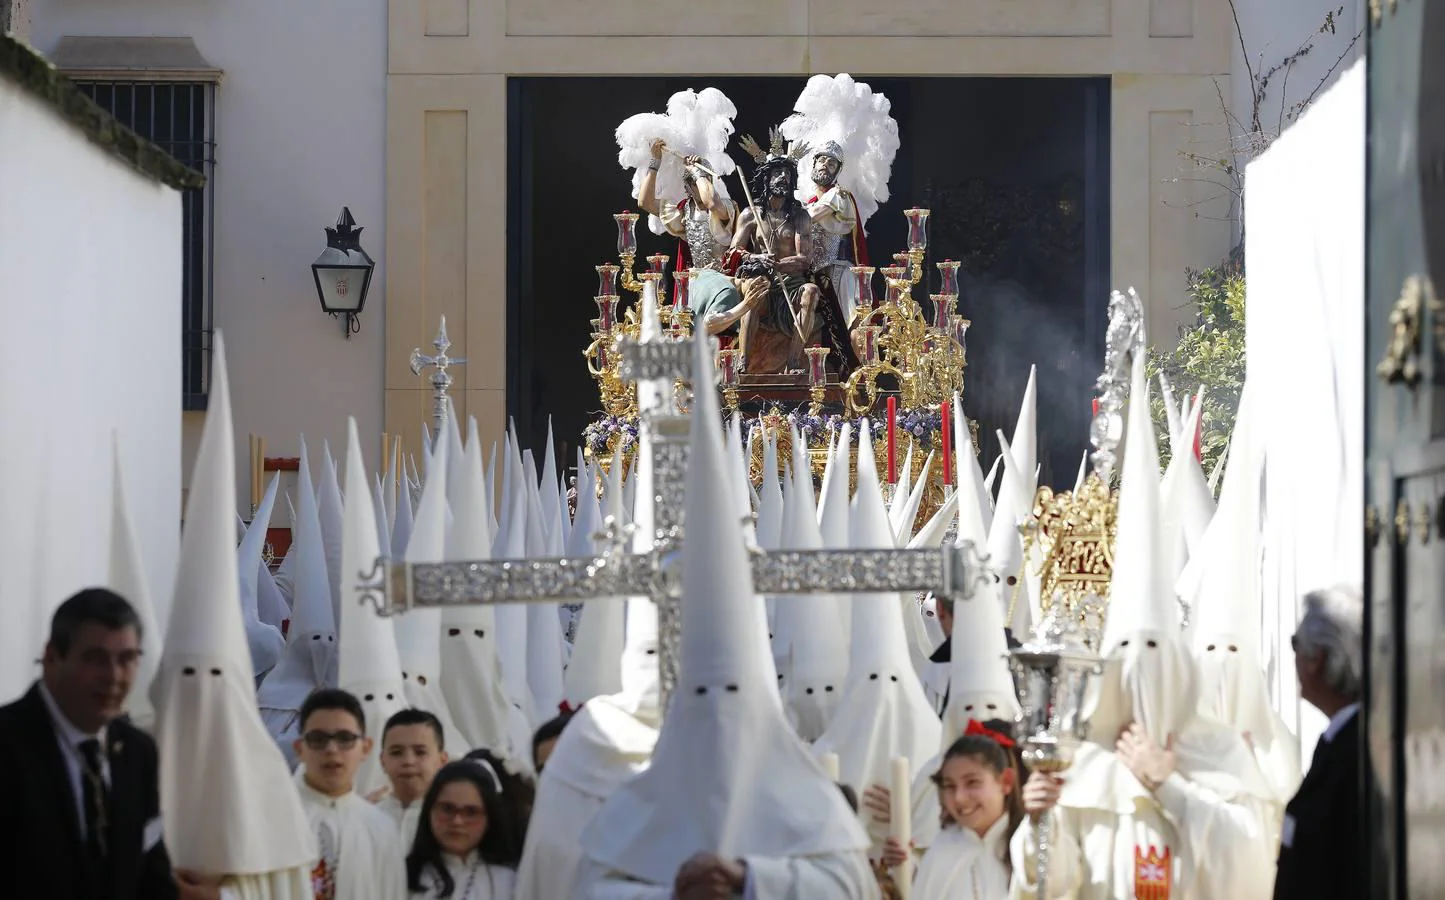 En fotos, el discurrir de la hermandad de la Merced por Córdoba